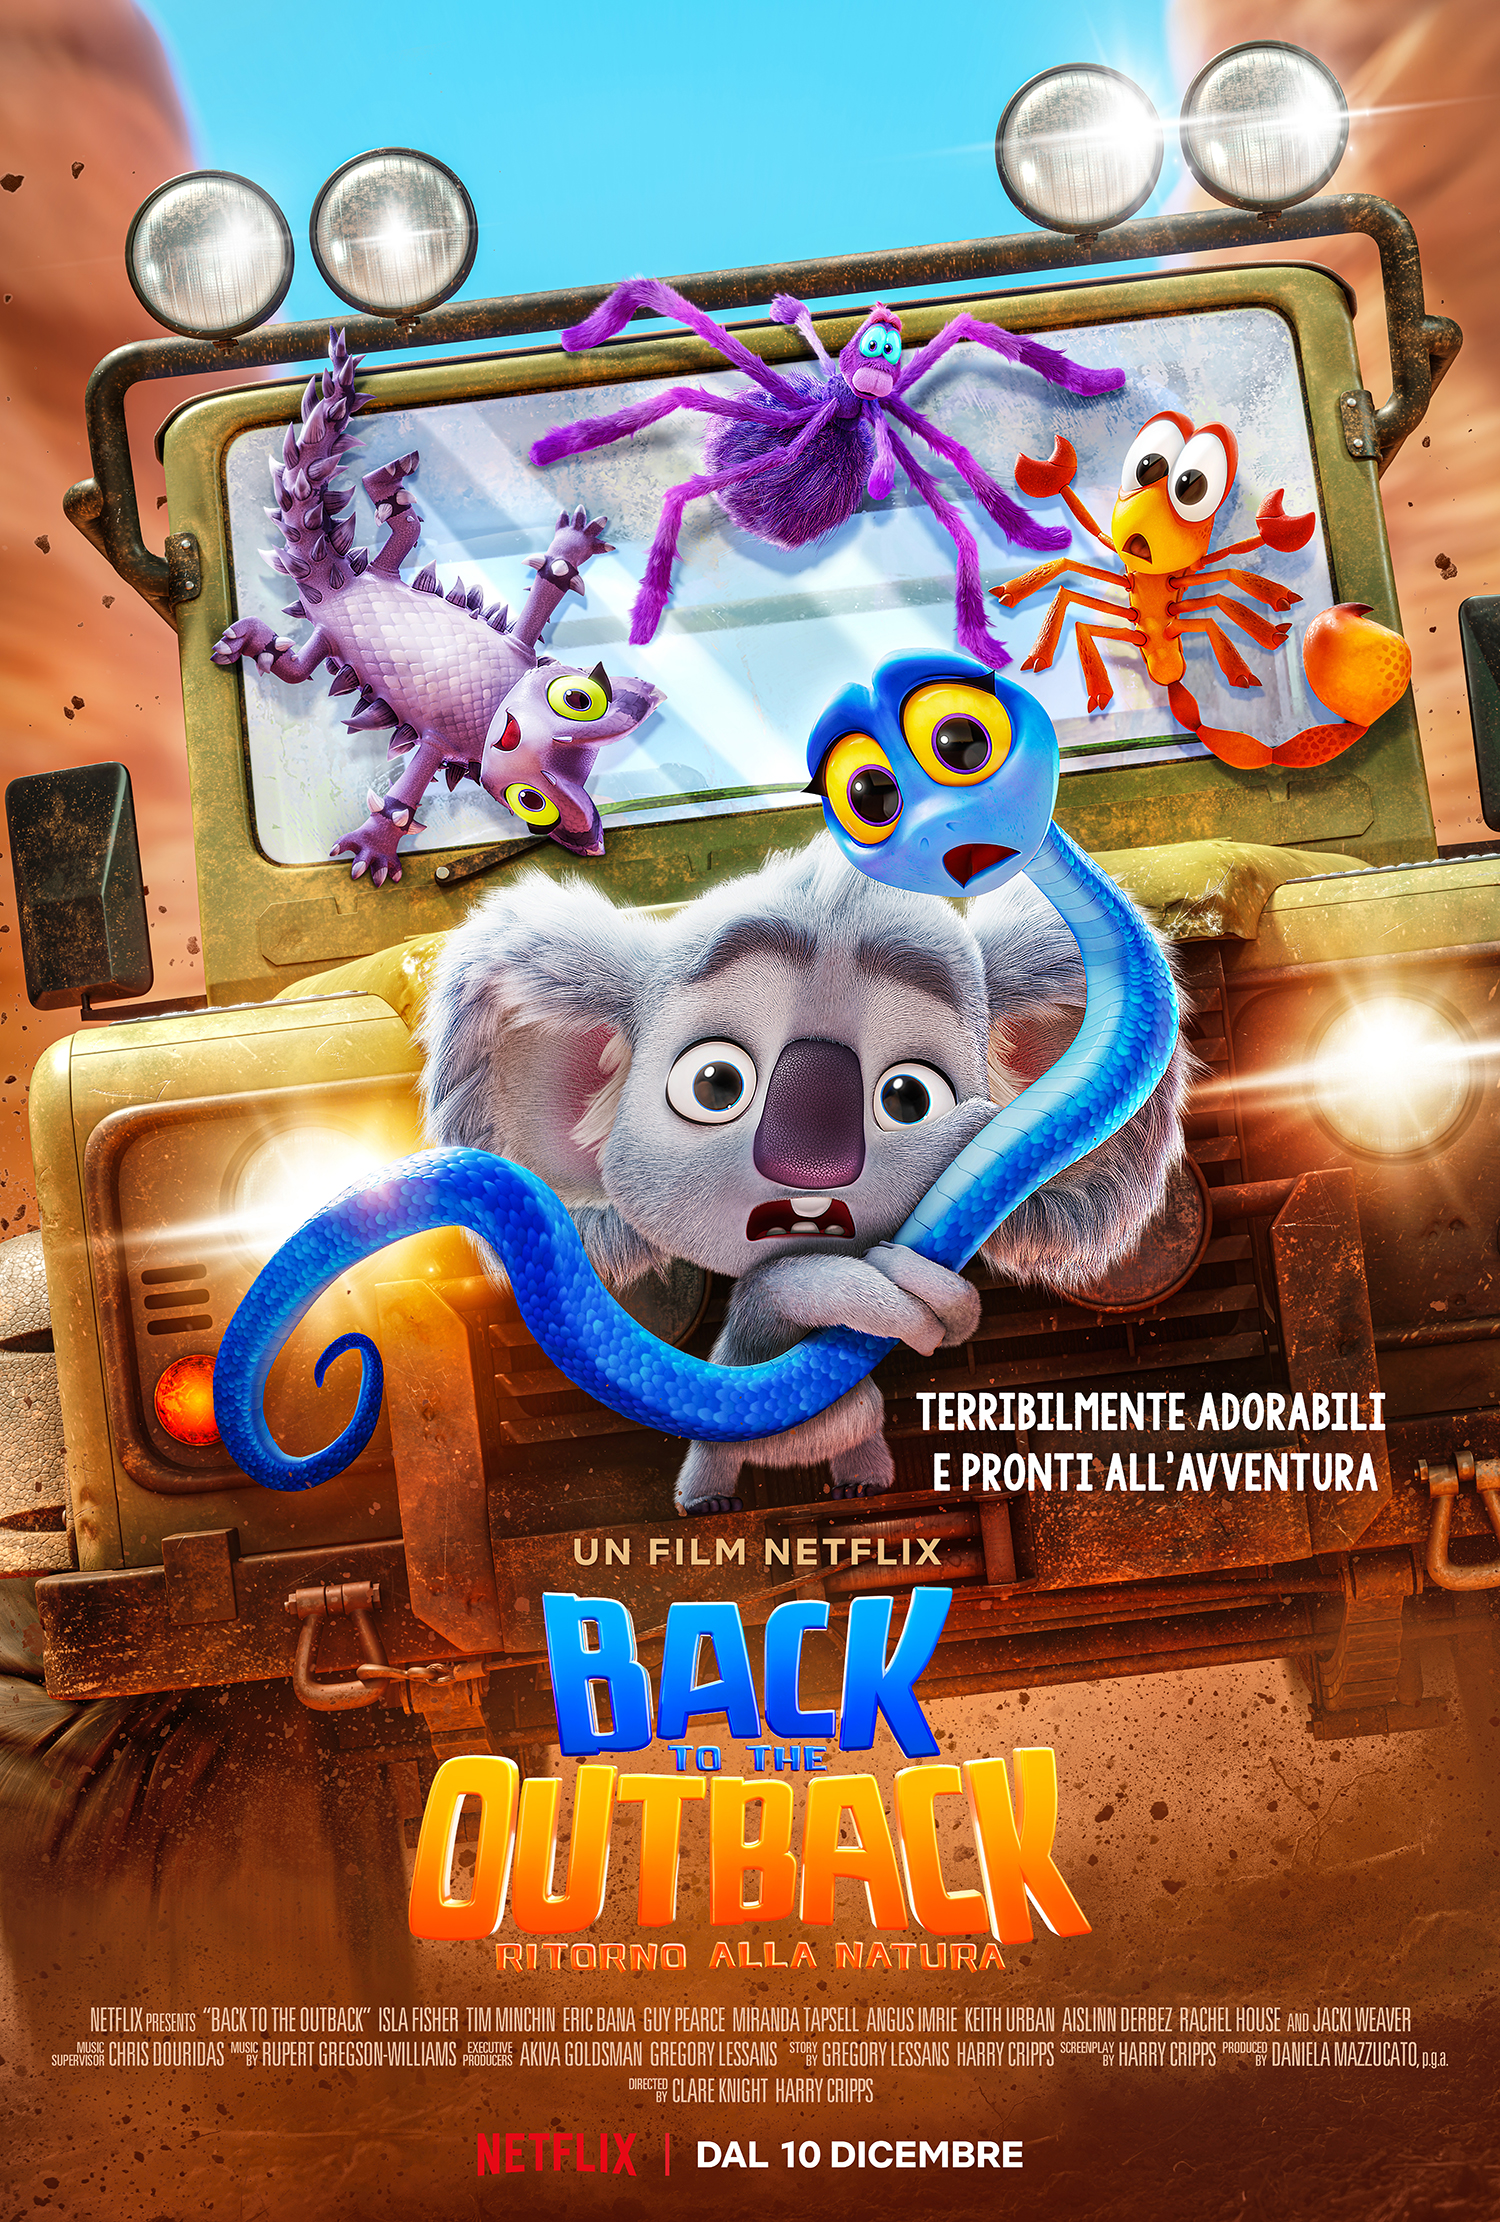 back to the outback. nella locandina ufficiale i protagonisti: un koala, un serpente e altri animali su una jeep.